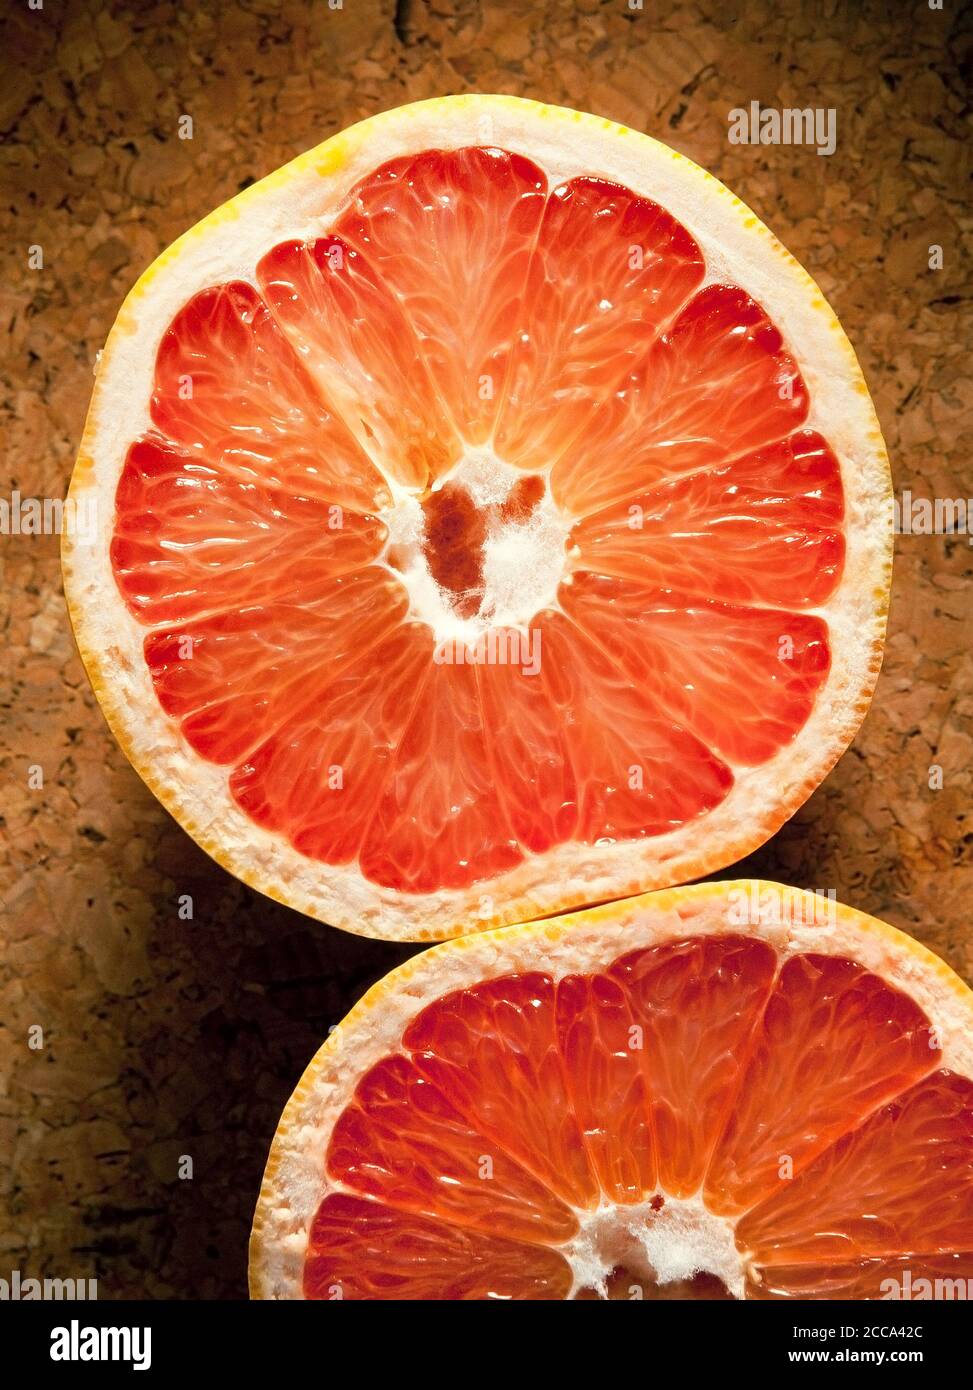 Pink Grapefruit, Citrus paradisi, cut section. Stock Photo